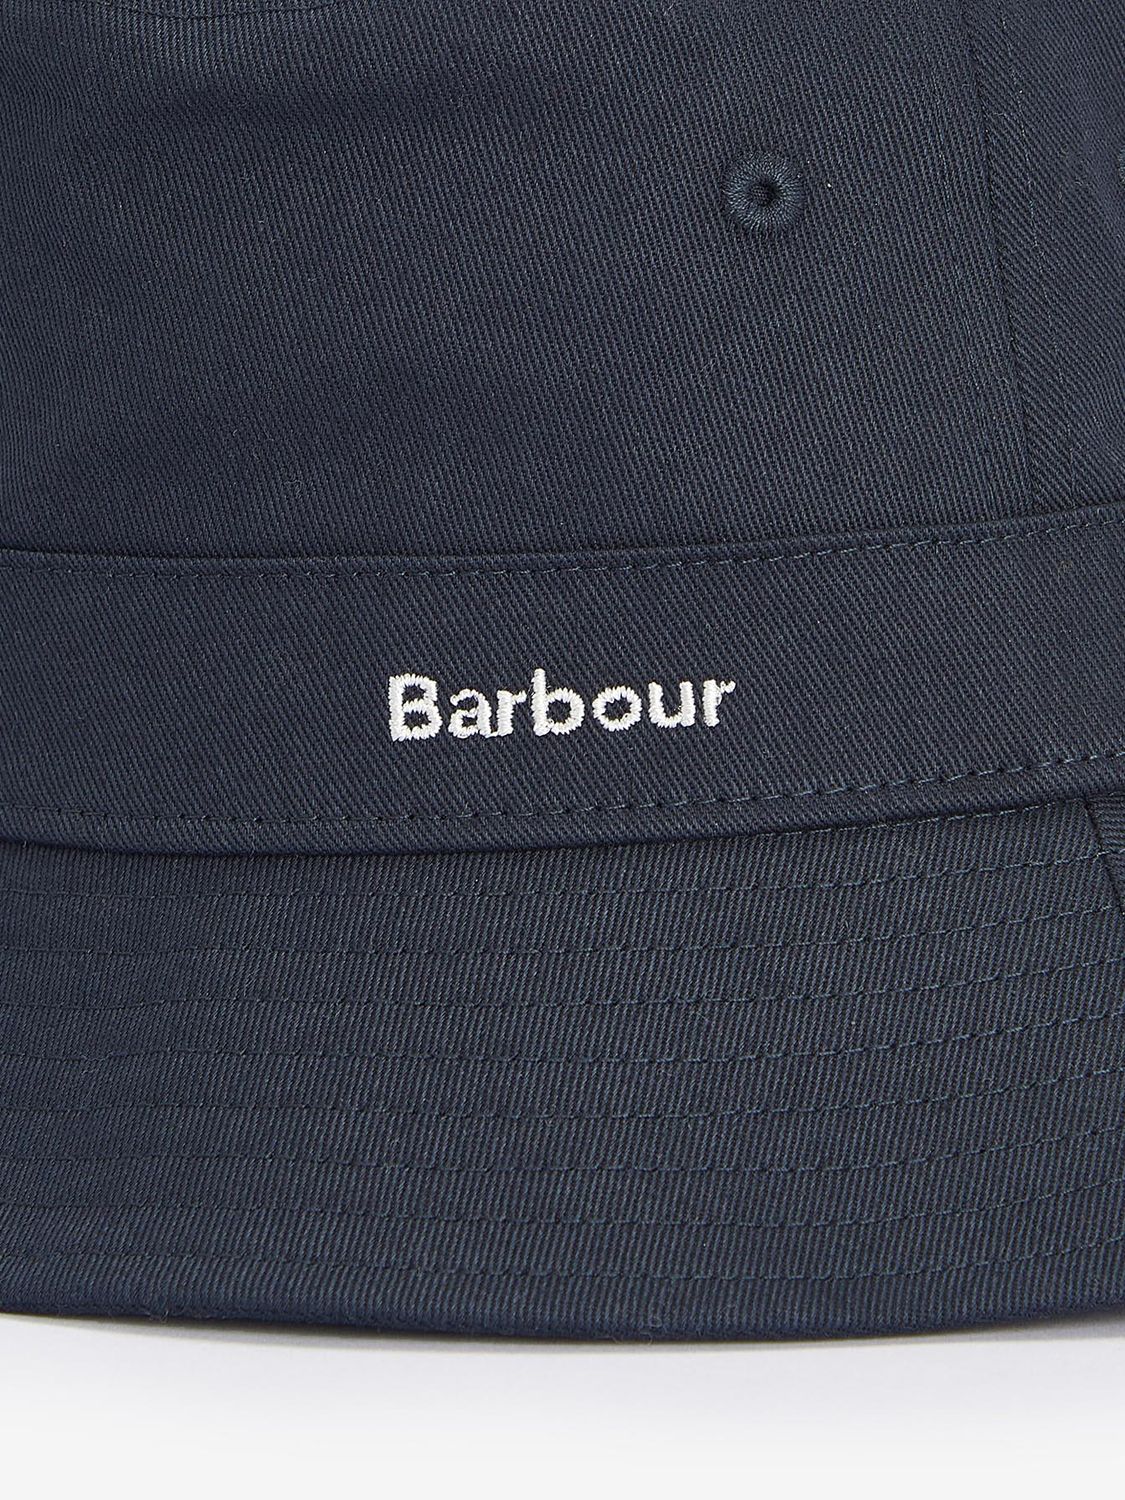 Barbour Olivia Cotton Bucket Hat, Navy, M